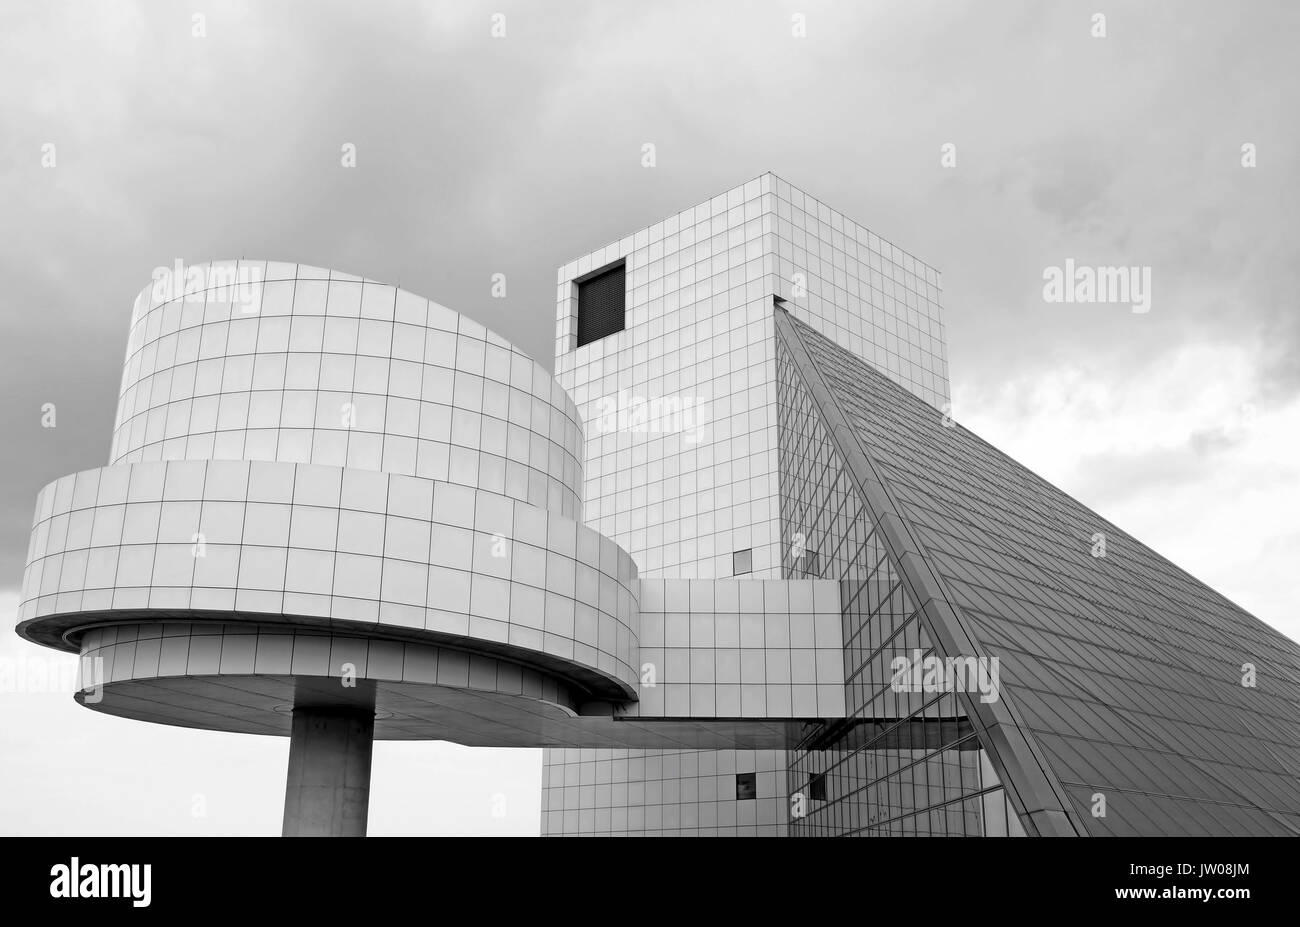 El Rock and Roll Hall of Fame diseñado por I.M.Pei destaca contra un nublado cielo en Cleveland, Ohio. Foto de stock